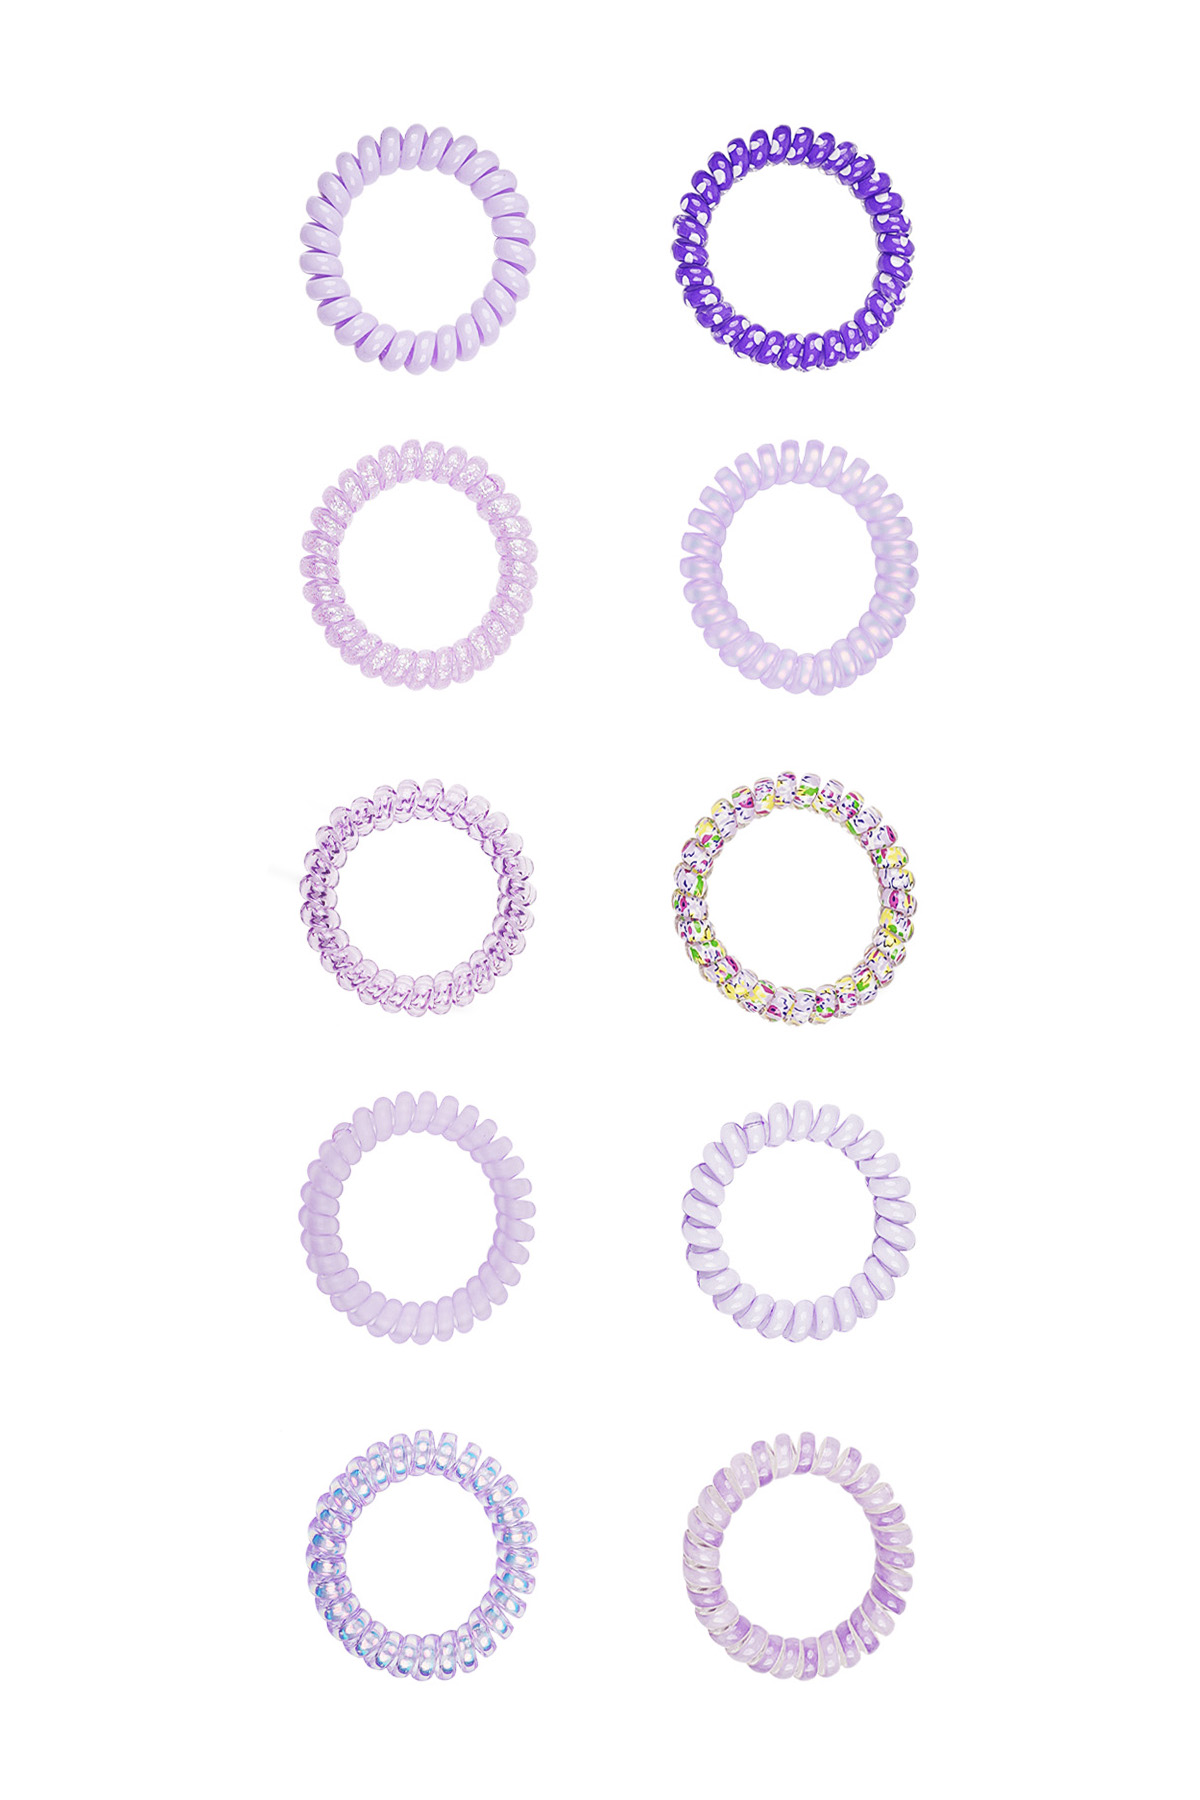 Twist rubber bands/bracelets - lilac